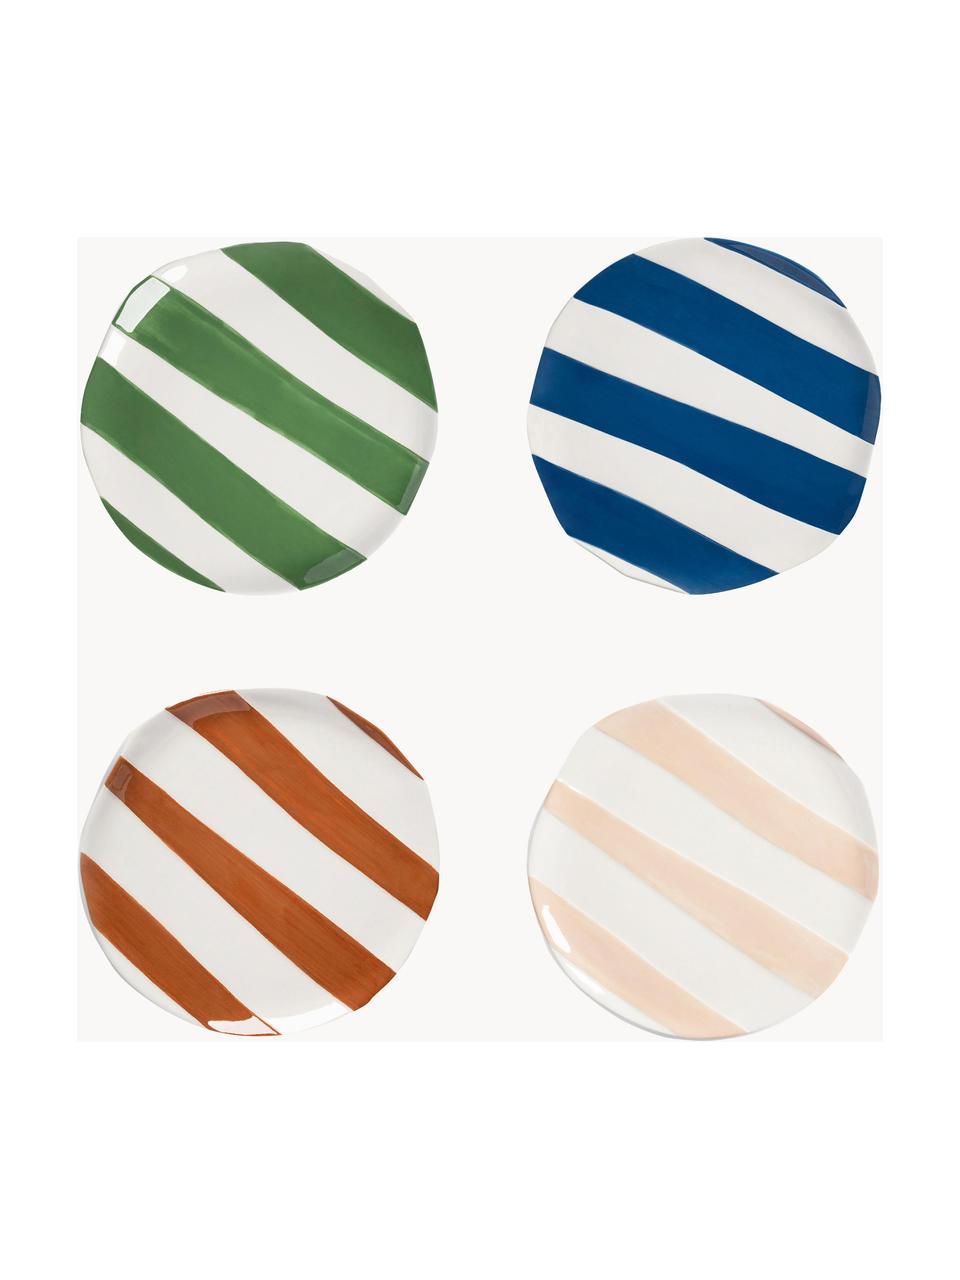 Platos postre artesanales Oblique, 4 uds., Dolomita, Verde, azul, beige, marrón, blanco, Ø 18 cm